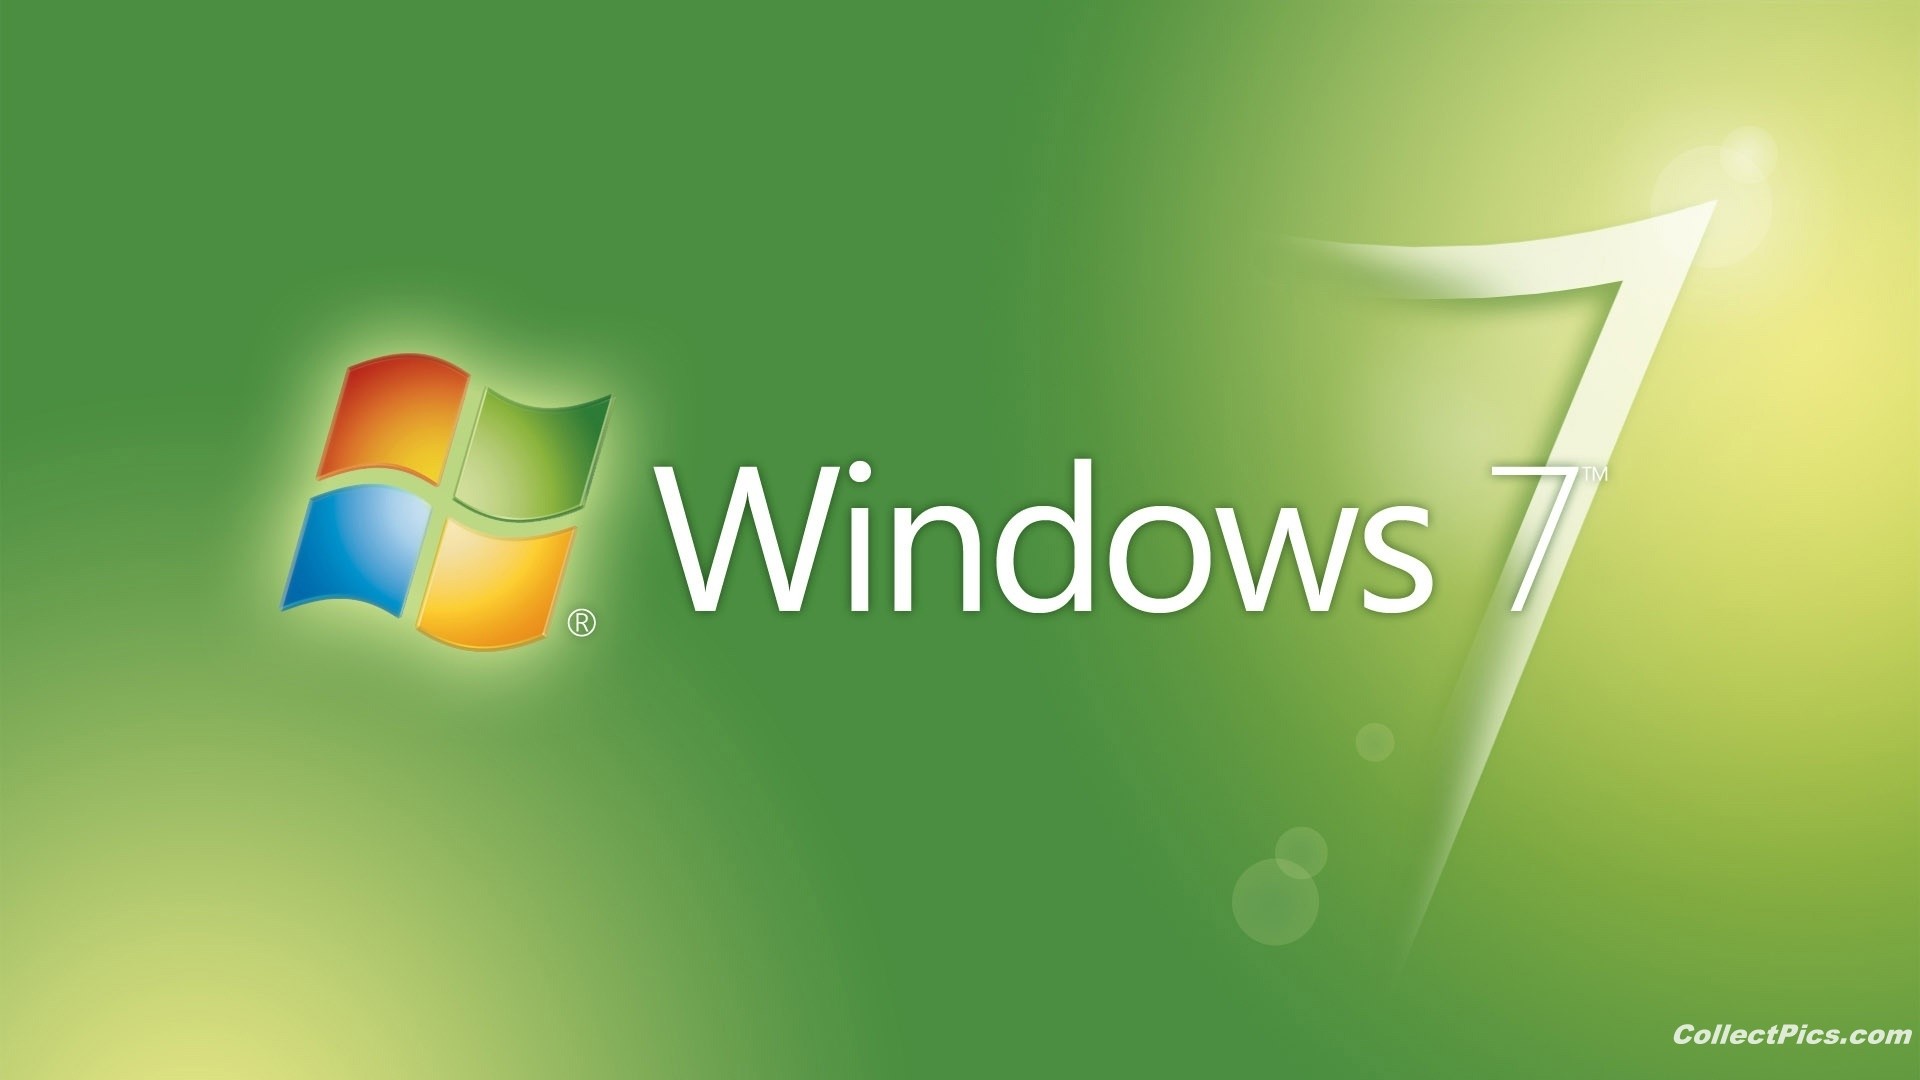 Windows 7 Green 1080p Wallpaper - Windows 7 Green Colour - HD Wallpaper 